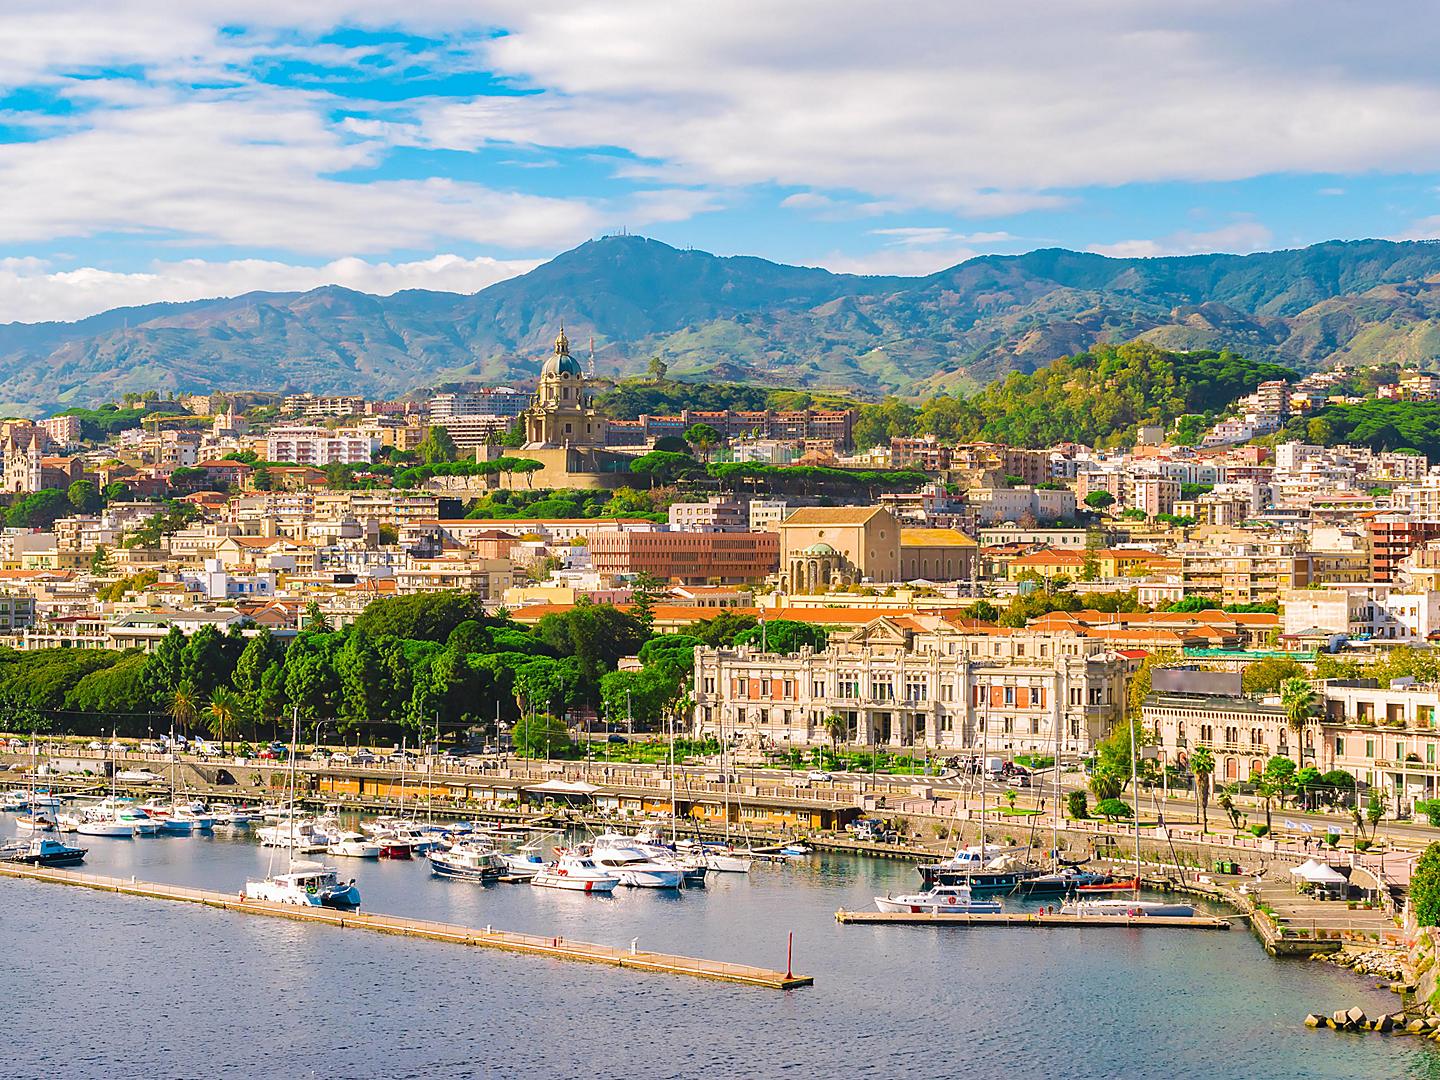 Sicily (Messina), Italy, Cityscape